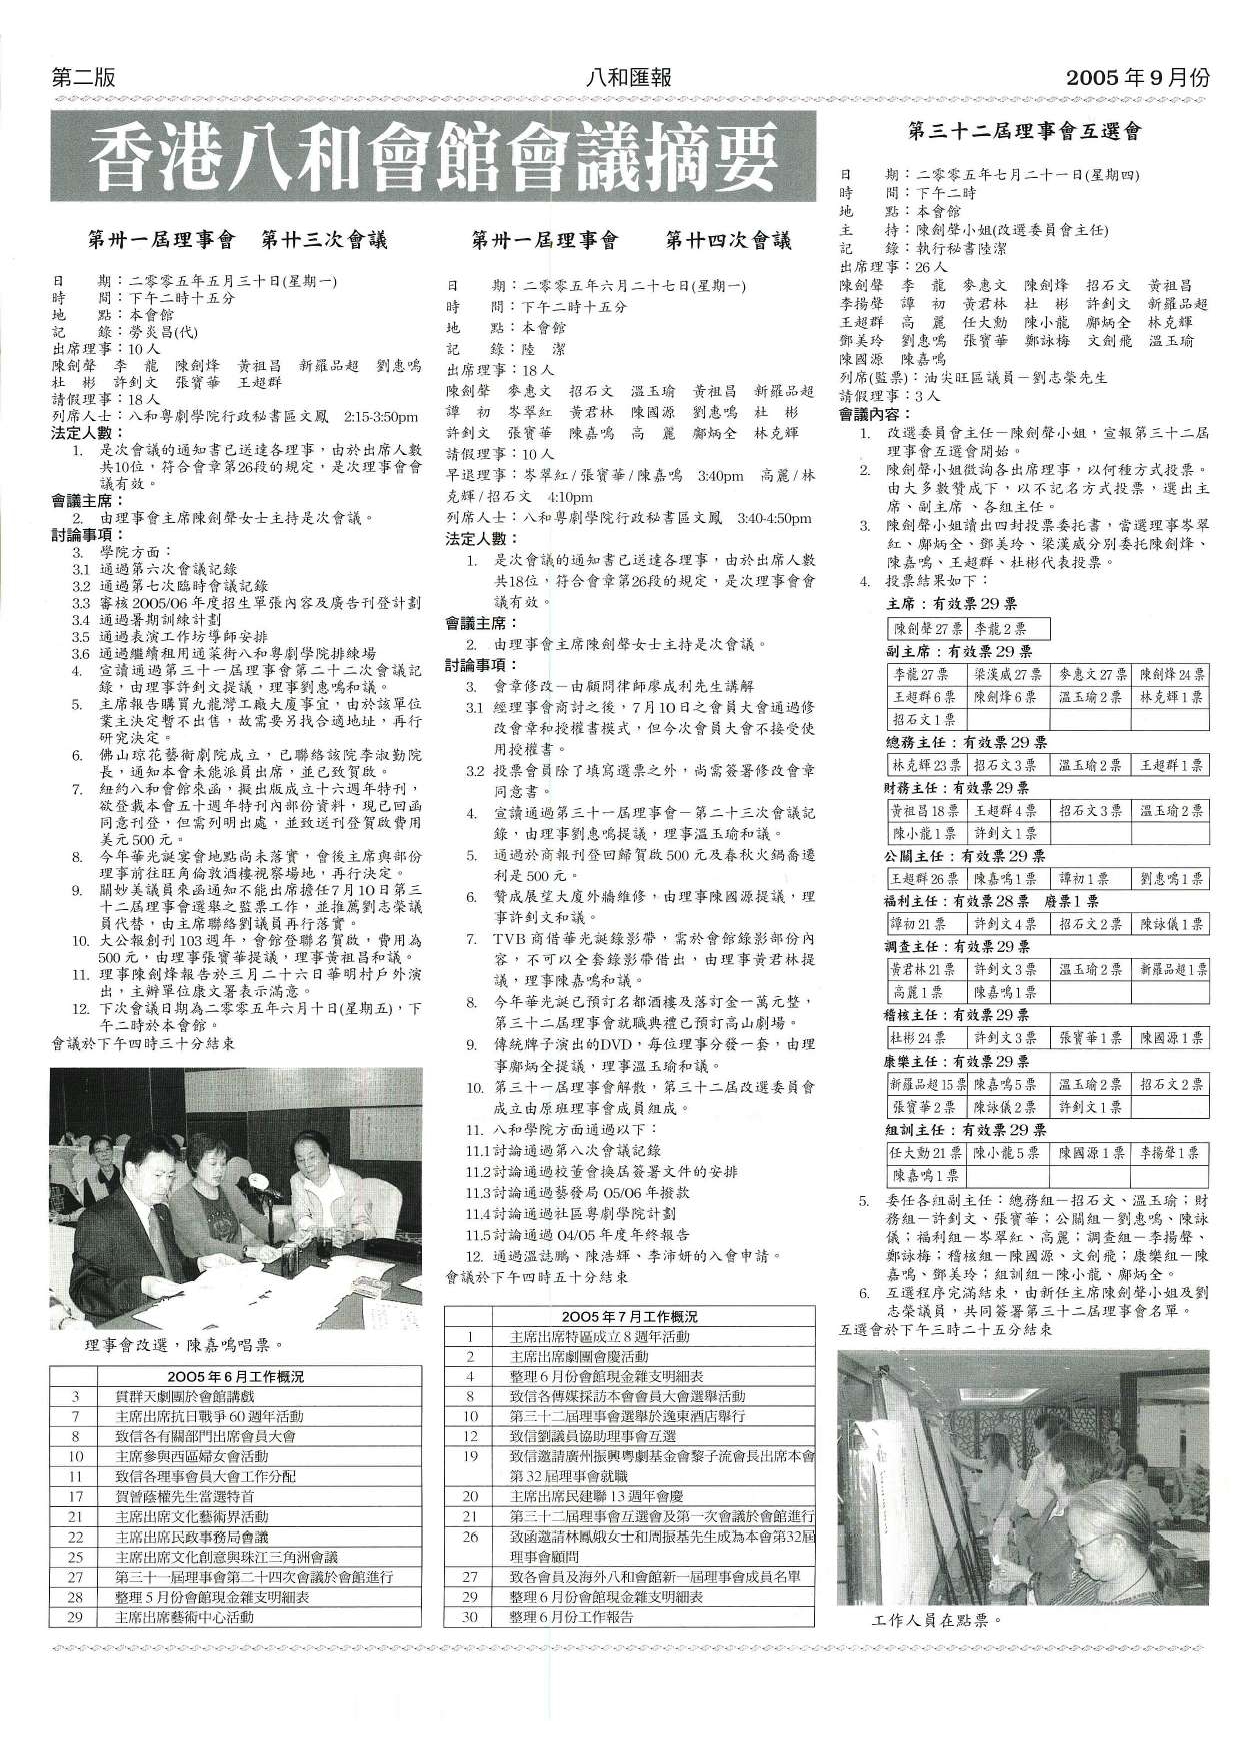 香港八和會館第三十一屆理事會第二十三至二十四次會議議程、第三十二屆理事會互選會會議議程及辦公室報告（2005年6月至7月）